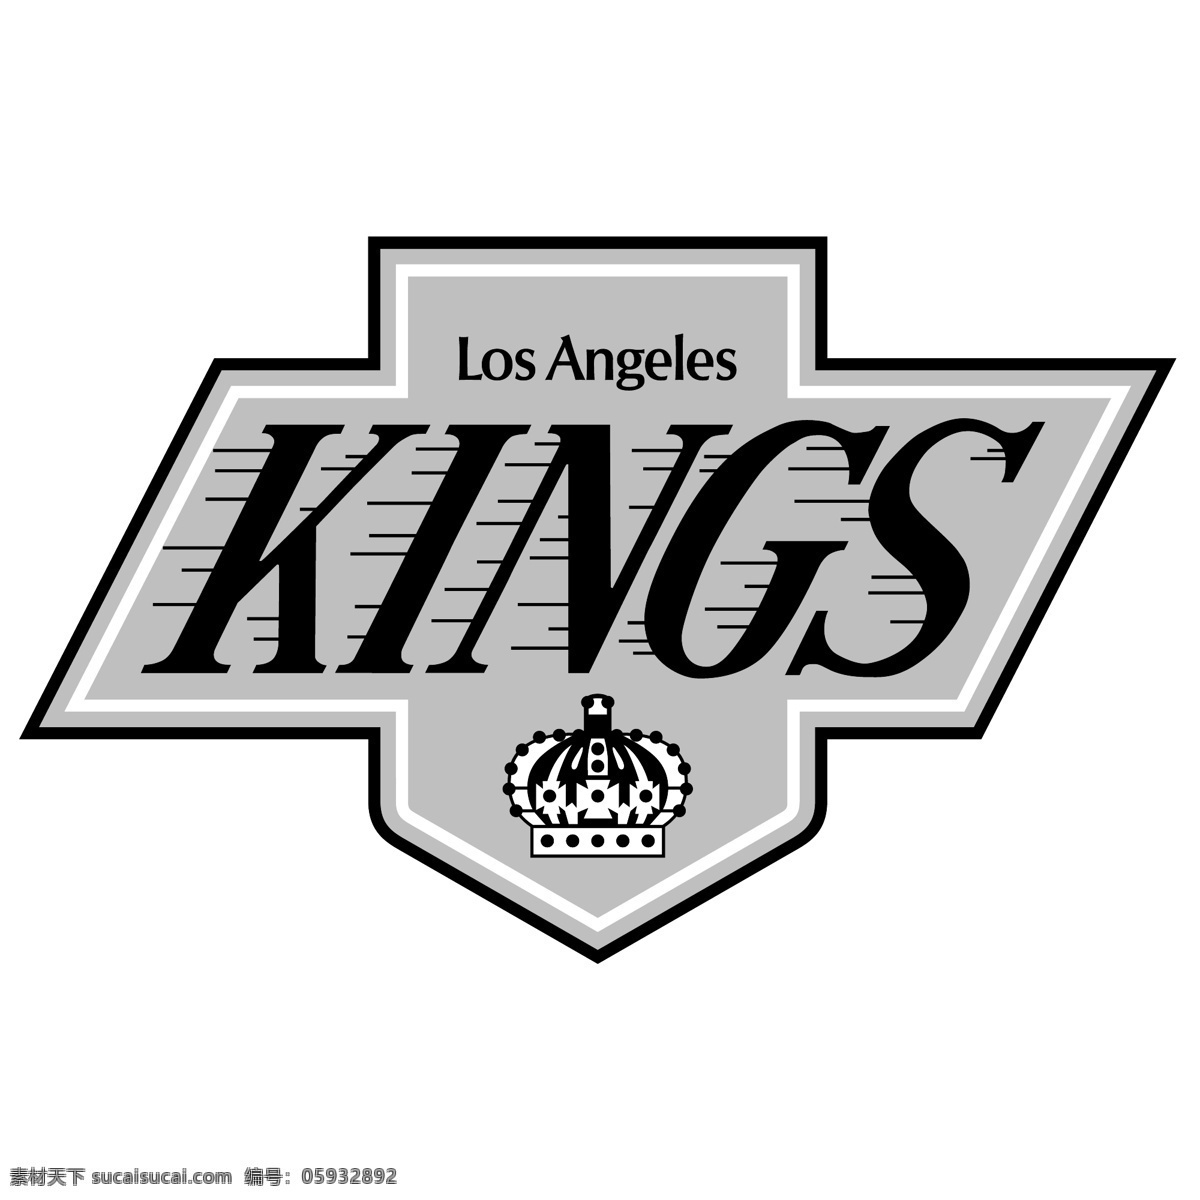 洛杉矶 国王队 矢量标志下载 免费矢量标识 商标 品牌标识 标识 矢量 免费 品牌 公司 白色